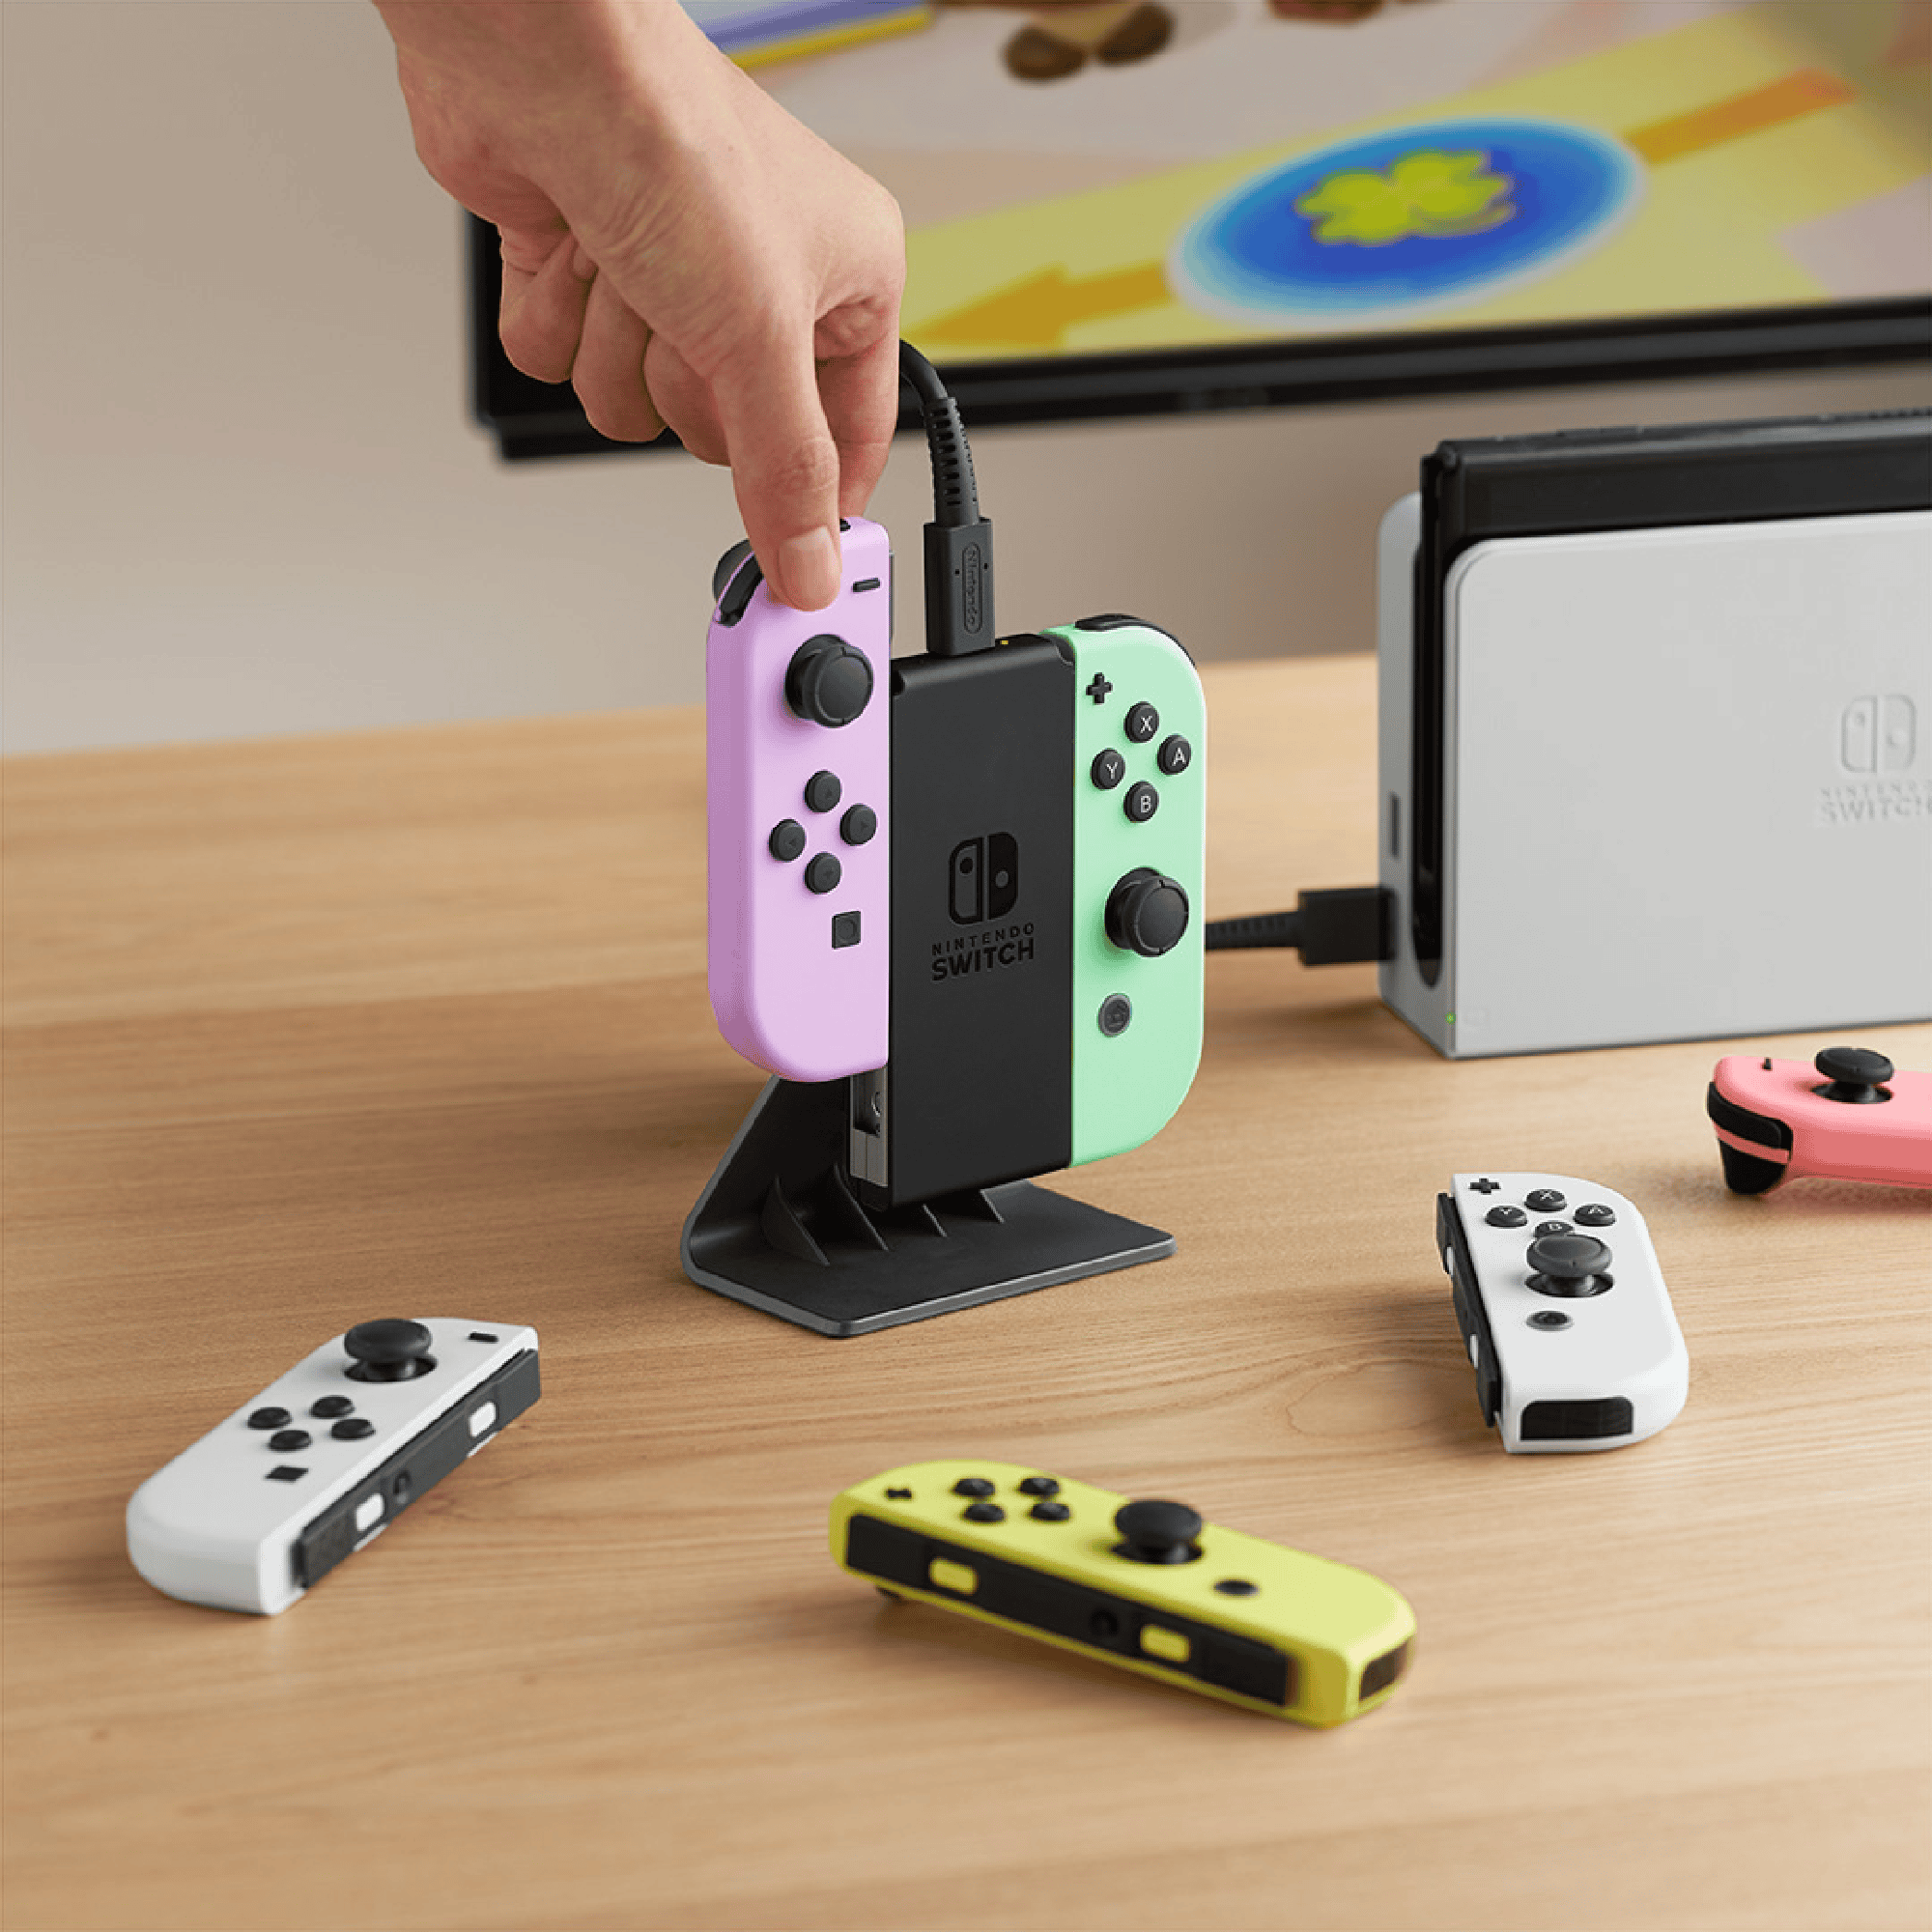 Imagem mostra um novo carregador portátil para os controles do Nintendo Switch